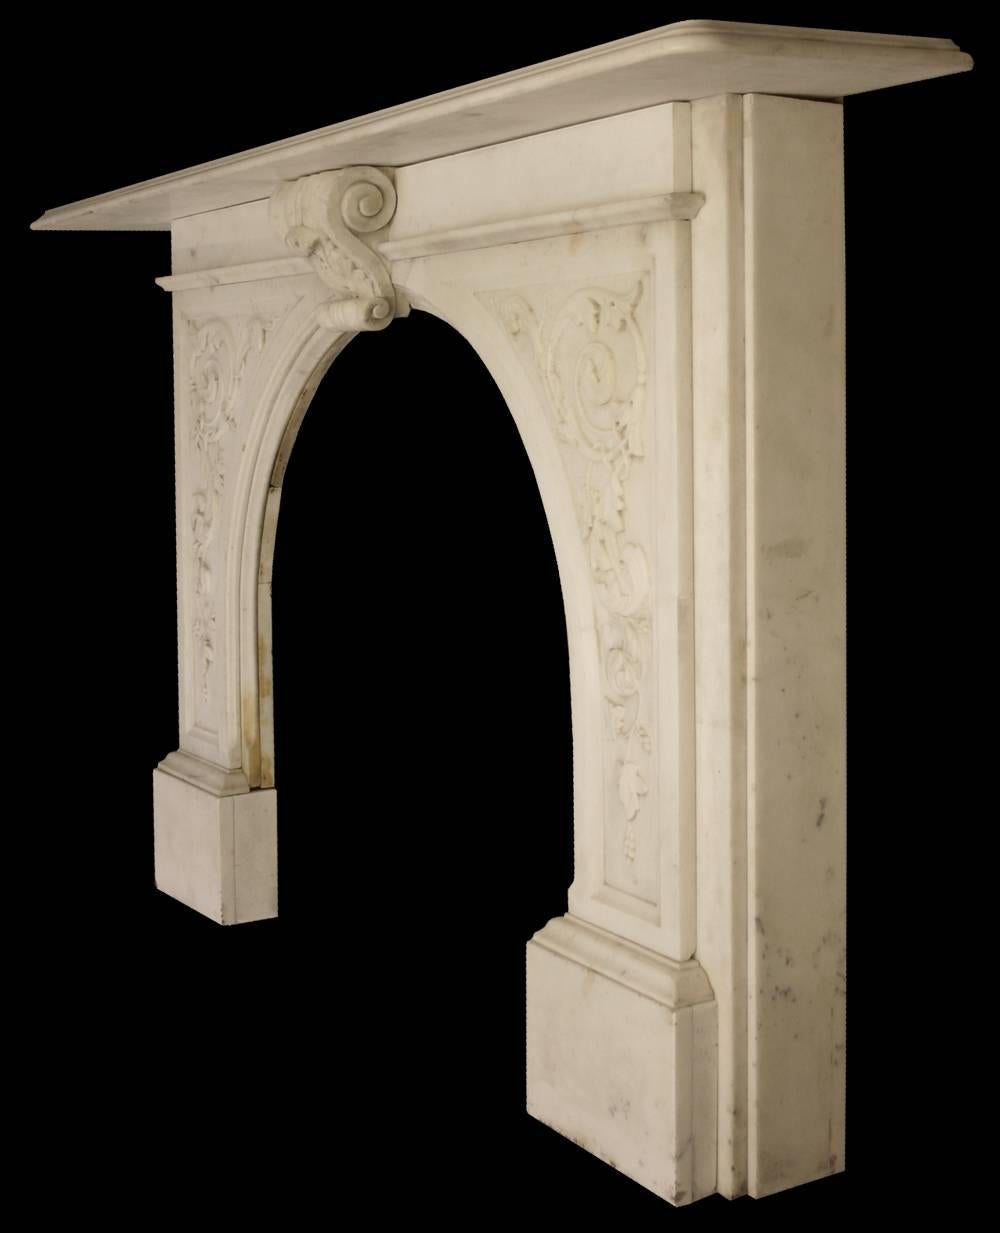 Eine erhebliche antike viktorianische geschnitzte Statuary Marmor Kamin umgeben mit gewölbten Öffnung. Jedes Bein ist gut geschnitzt mit Akanthus-Rollen, so ist auch der große Schlussstein.

Bilder vor der Restaurierung. Dieser Kamin ist noch